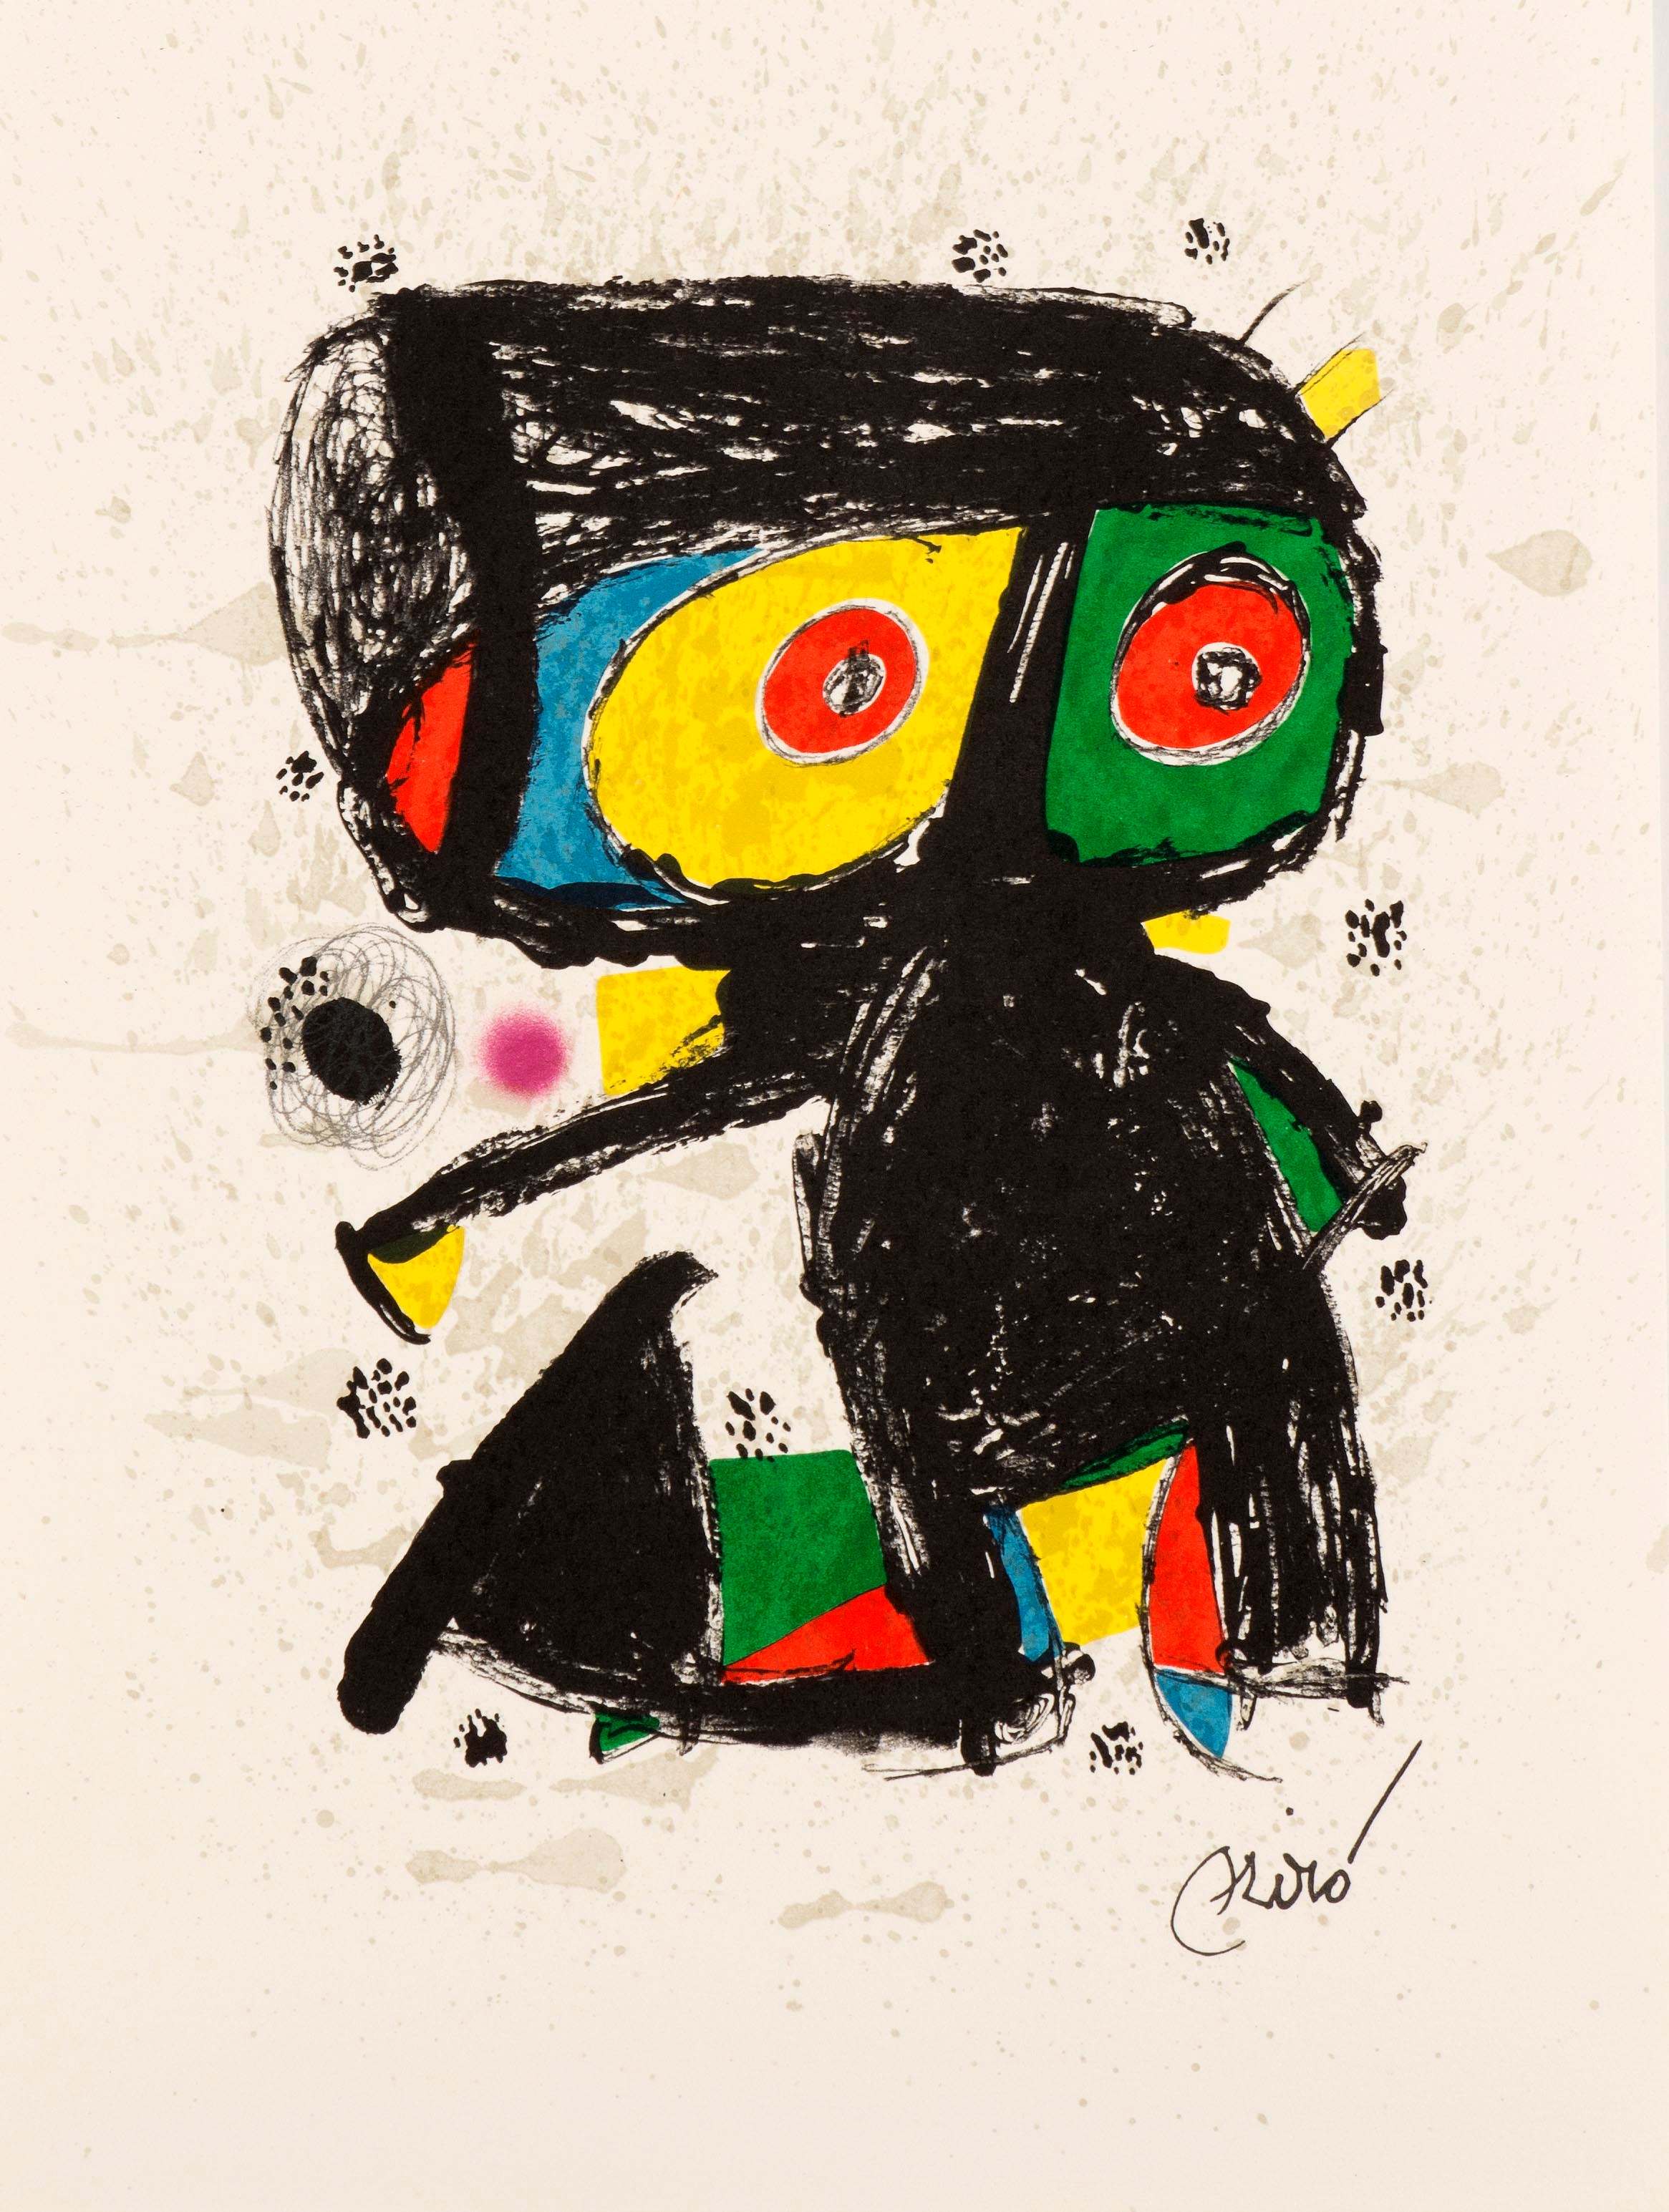 15 ans Poligrafa by Joan Miró, 1980